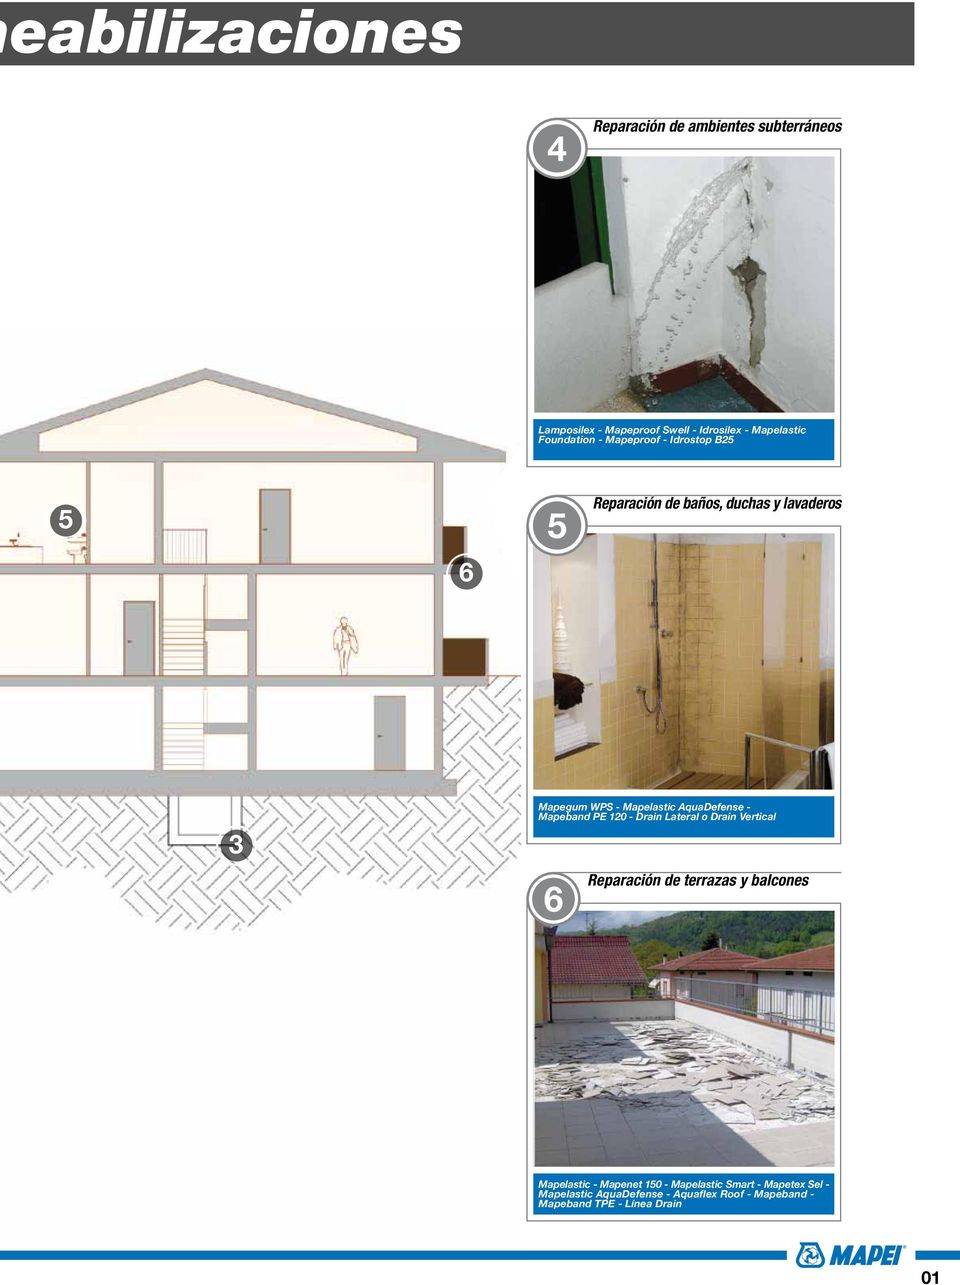 AquaDefense - Mapeband PE 120 - Drain Lateral o Drain Vertical 6 Reparación de terrazas y balcones -